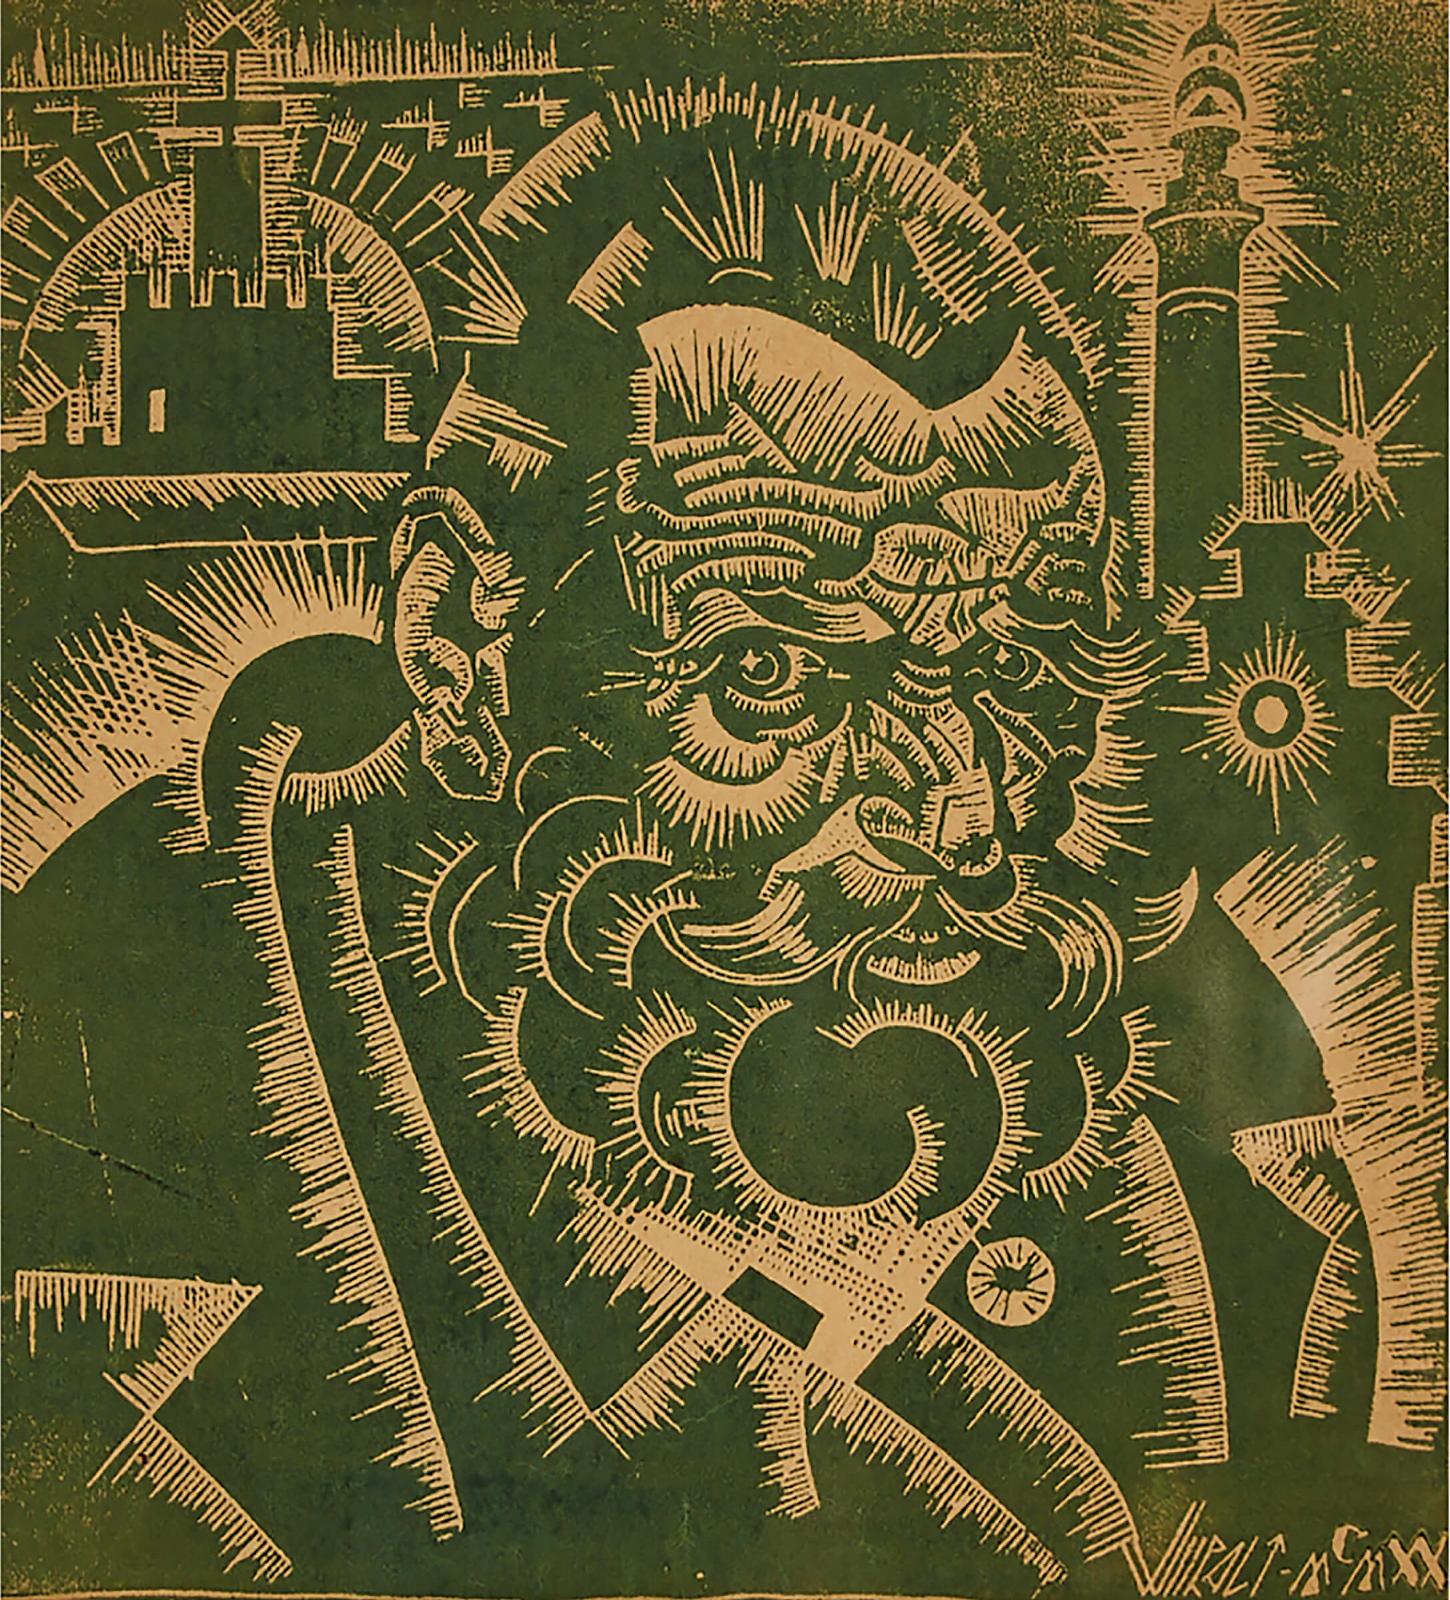 Eduard Wiiralt (1898-1954) - Vanamees (Vanamehe) Pea (The Old Man's Head), 1920 [from The 